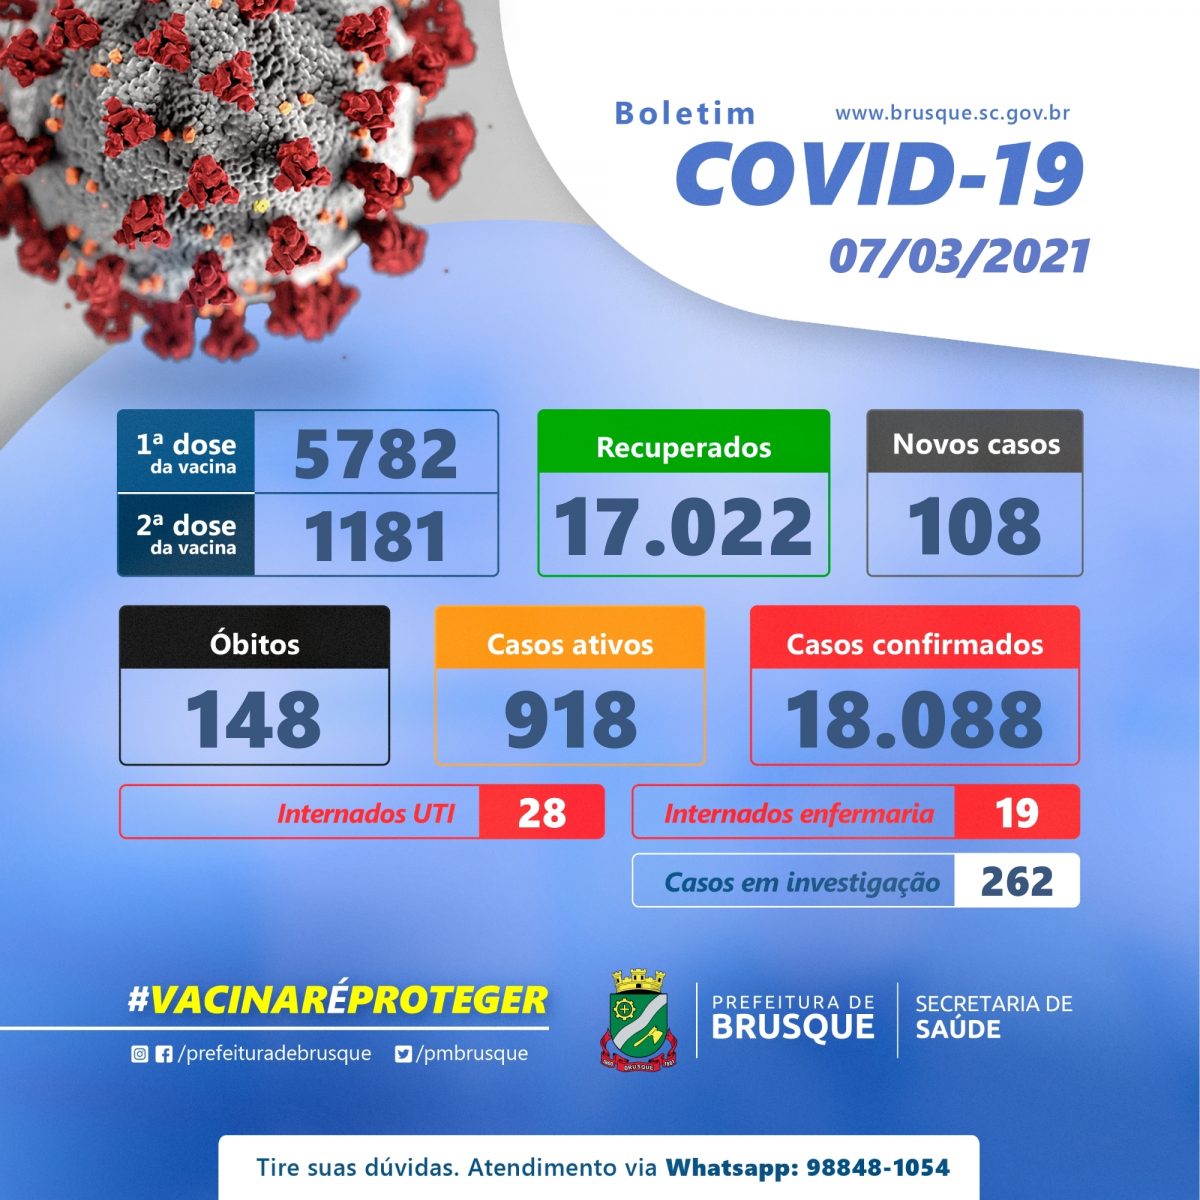 Covid-19: Confira o boletim epidemiológico deste domingo (07)